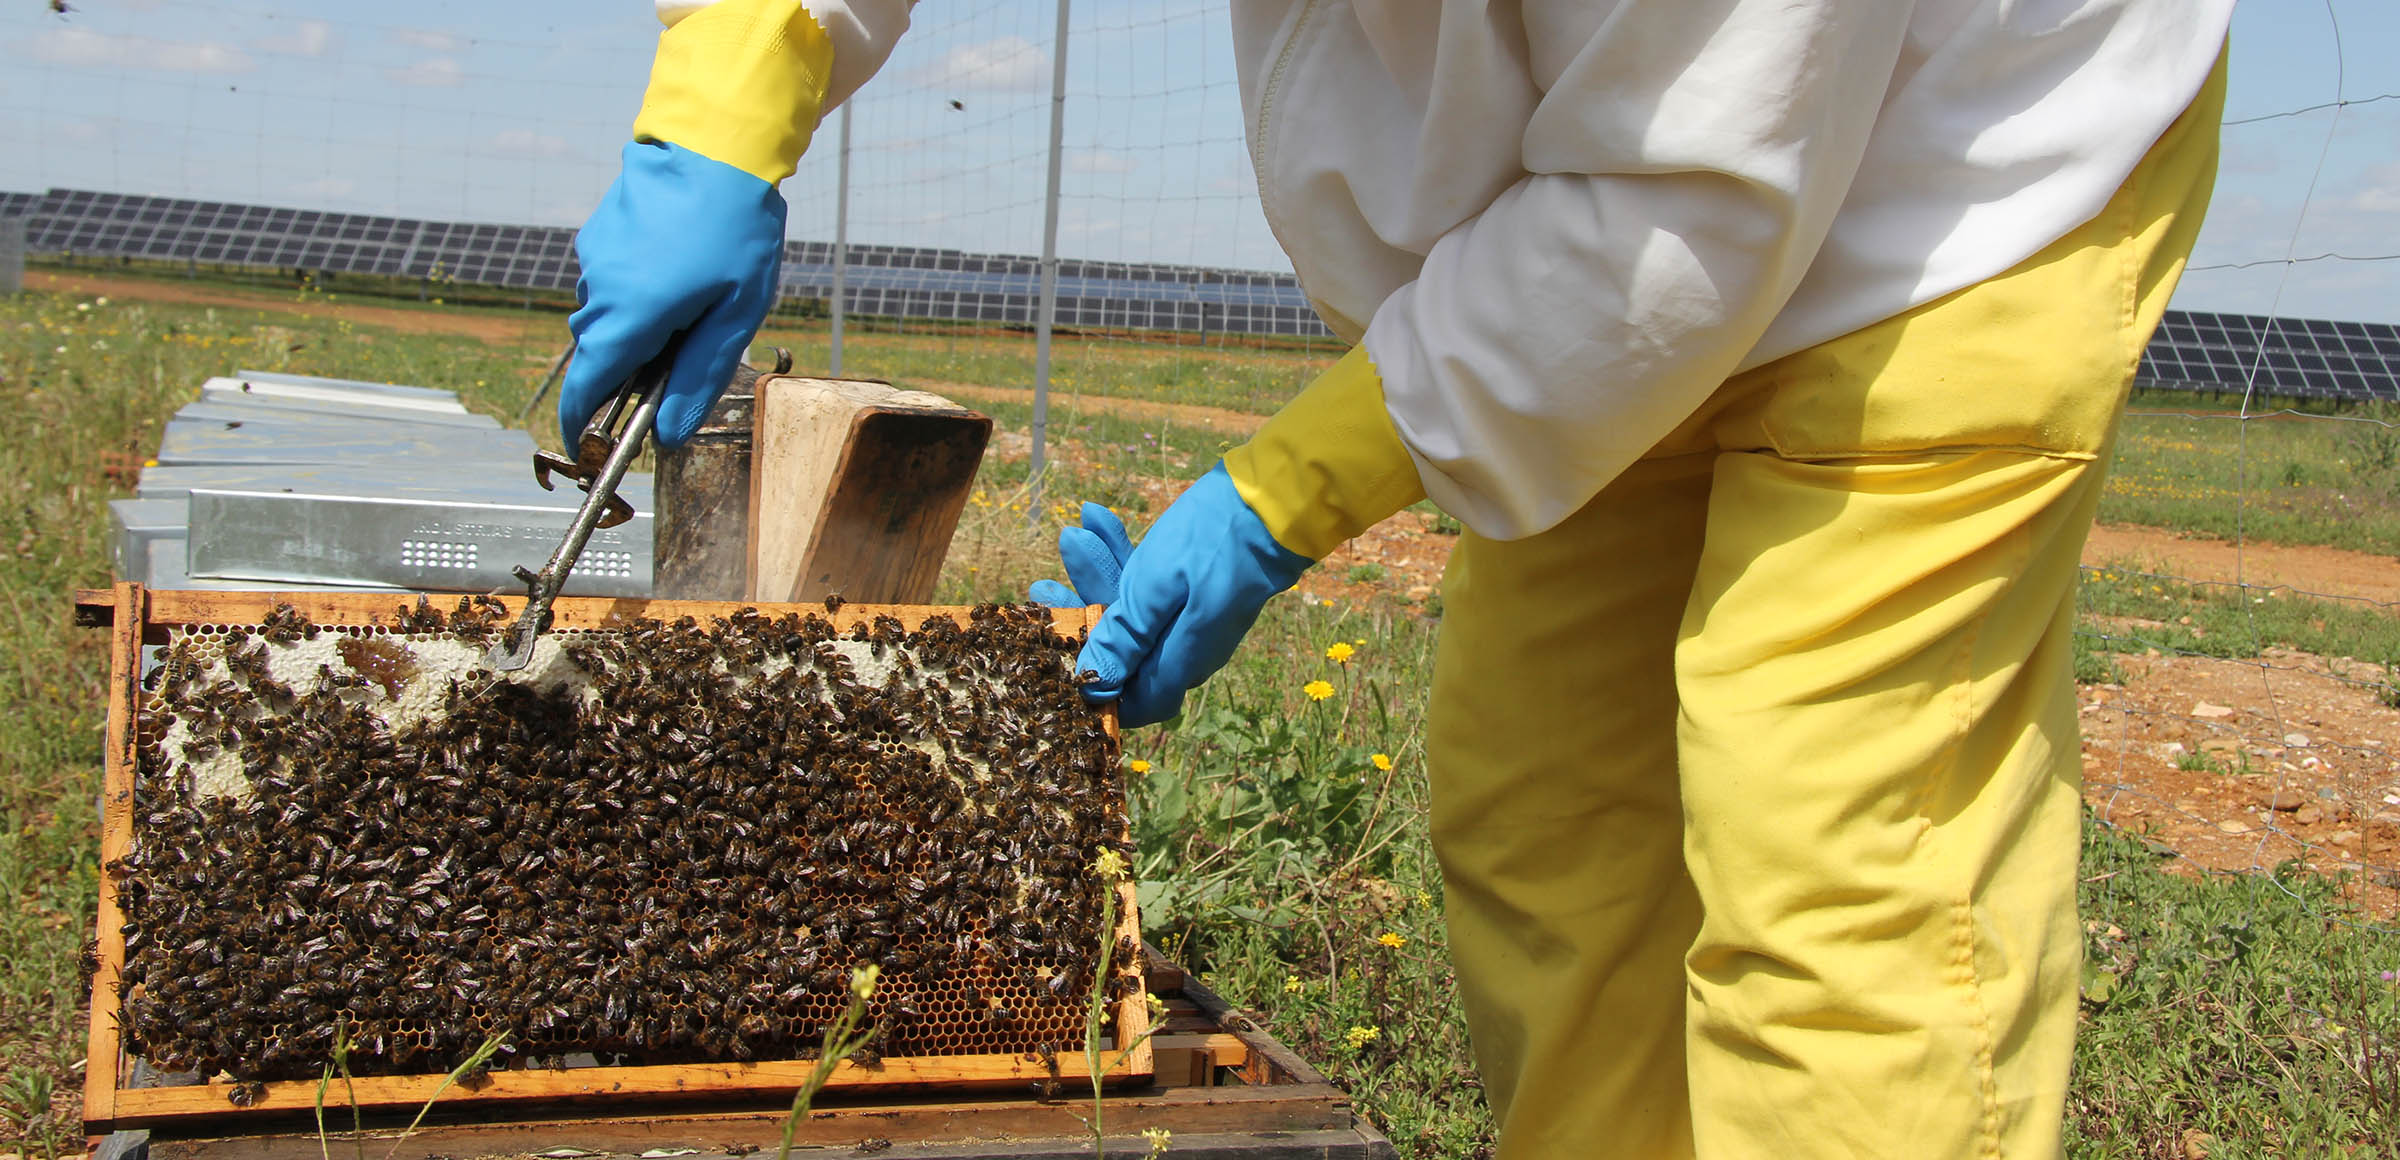 Sol e mel: a colmeia fotovoltaica que ajuda as abelhas